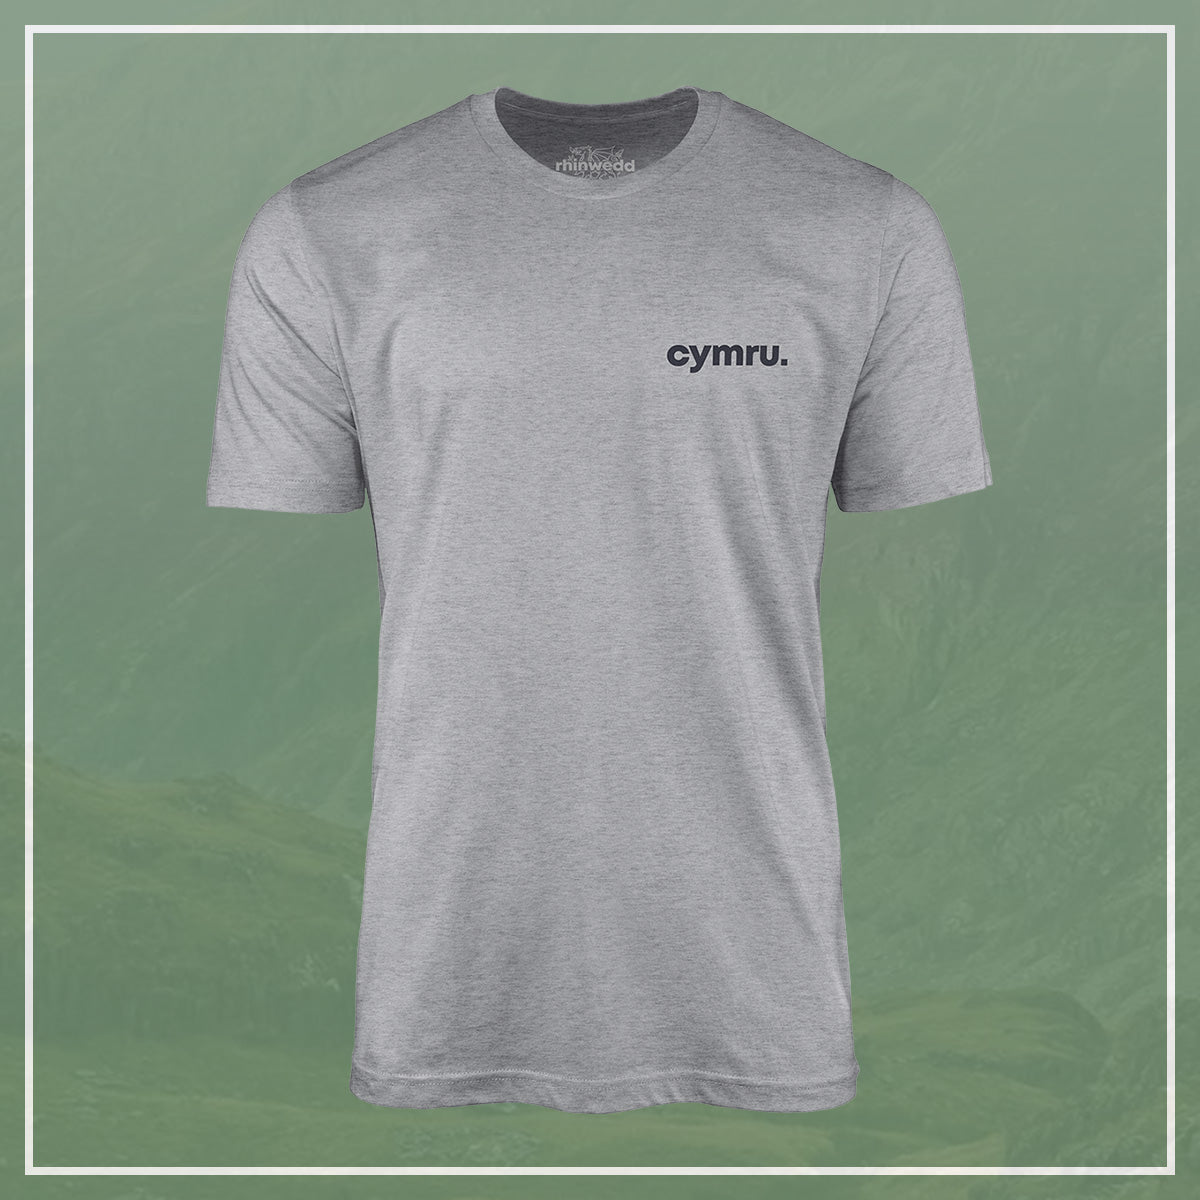 Cymru T-Shirt - Grey